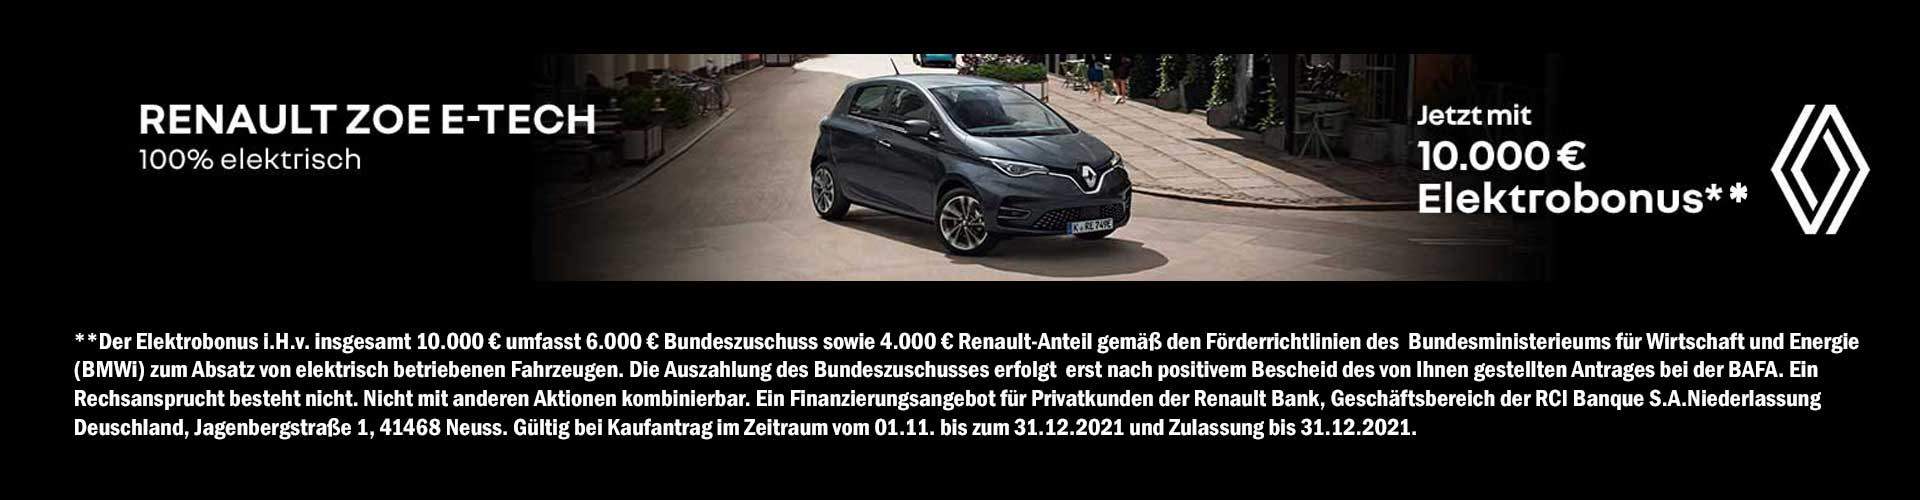 Angebot Renault Zoe